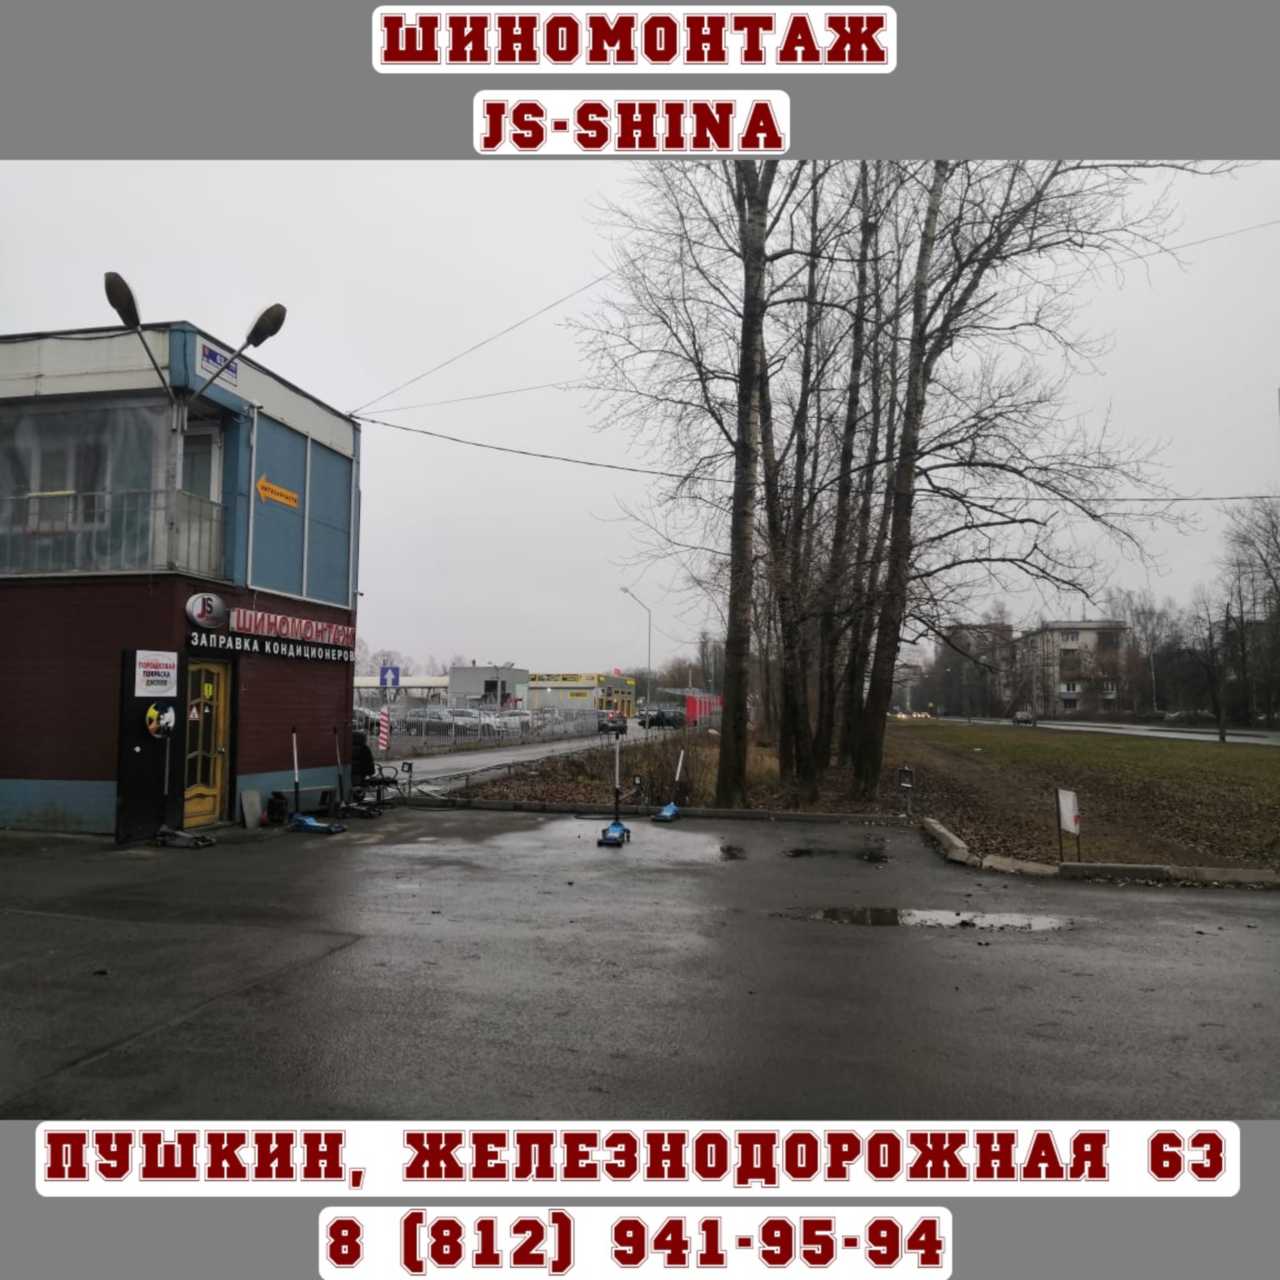 Шиномонтаж 24 часа в Пушкине, ул. Железнодорожная, д. 63 ремонт дисков